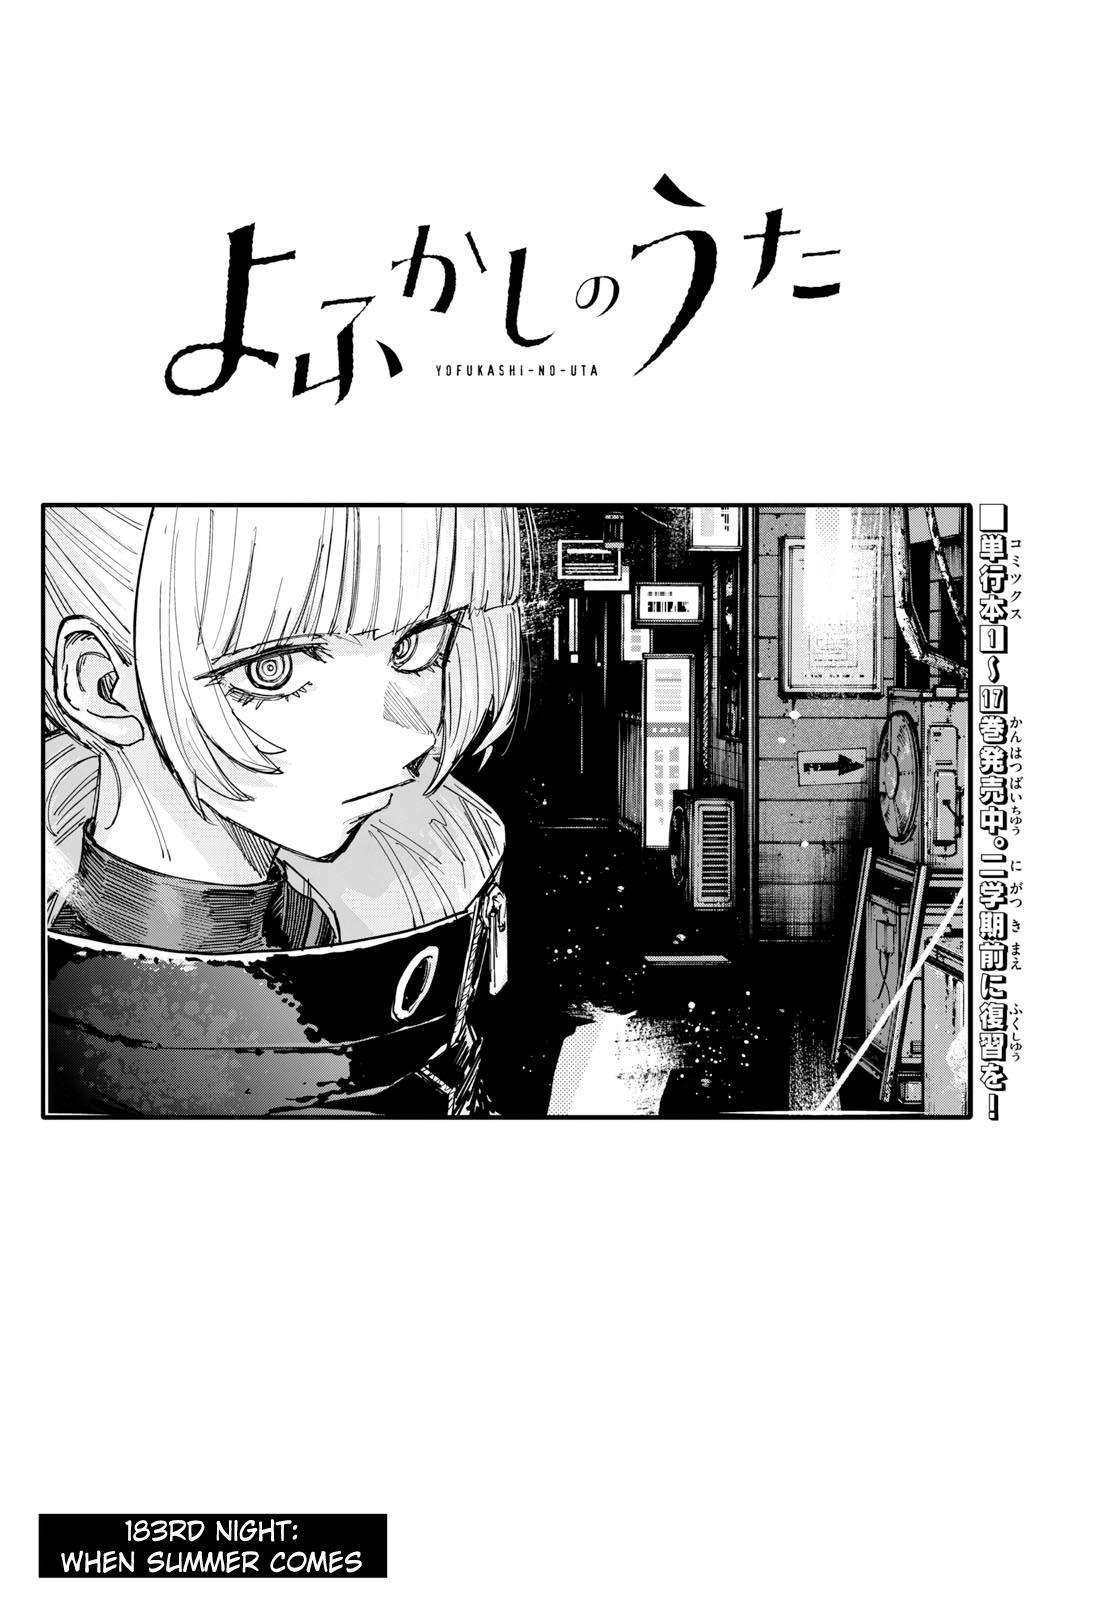 Yofukashi no Uta Ch.182.5 Page 9 - Mangago